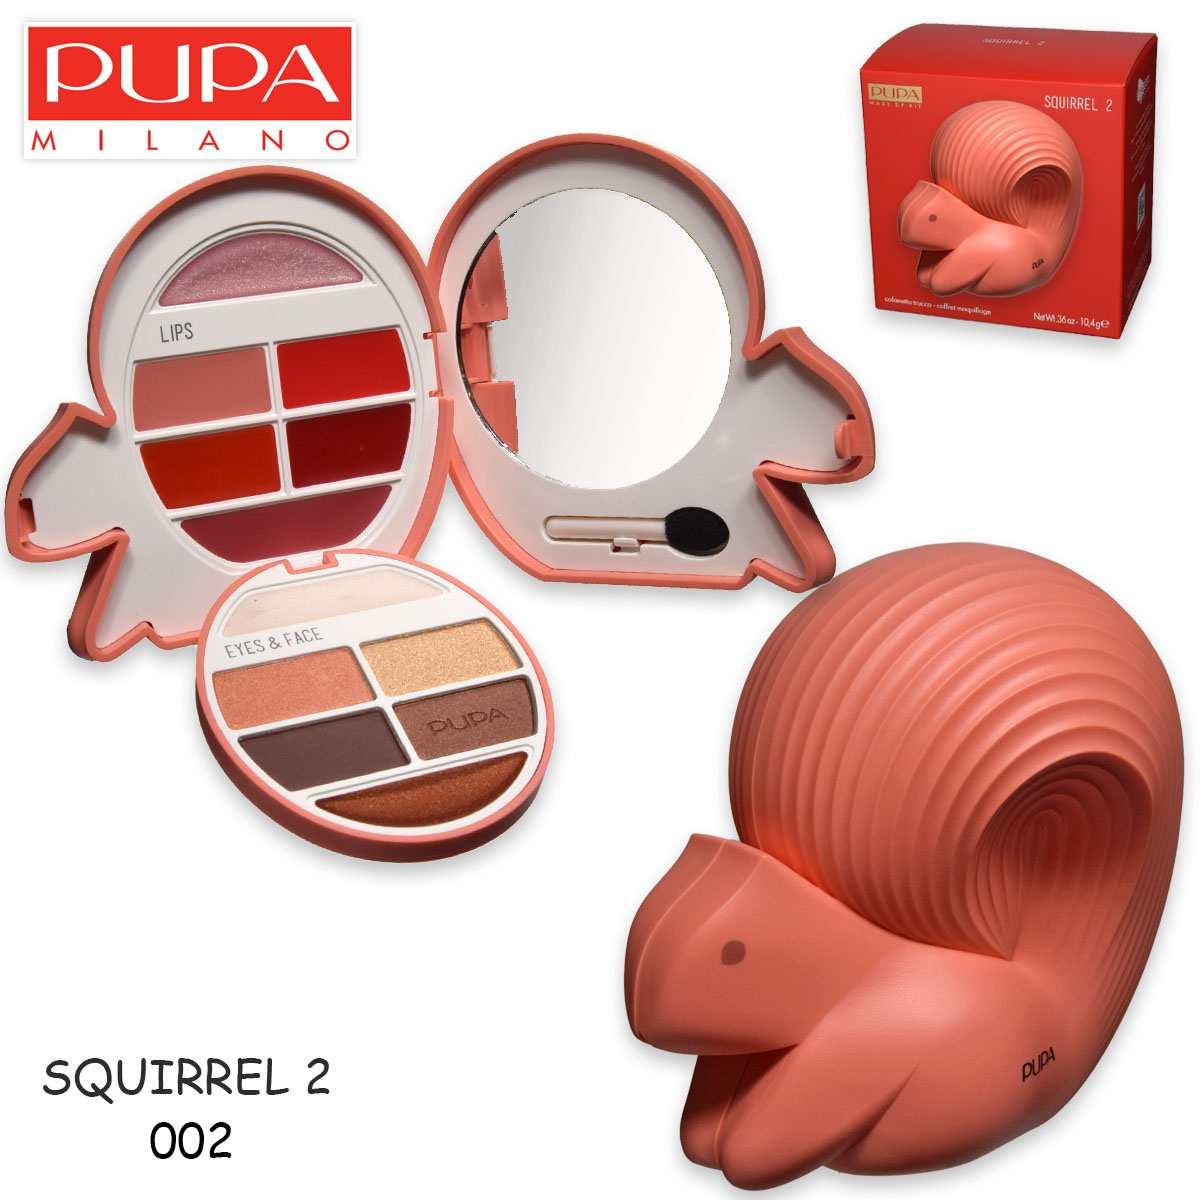 Pupa Squirrel 2 Make Up Set 010264A002 грим палитра за очи и устни 10.4g